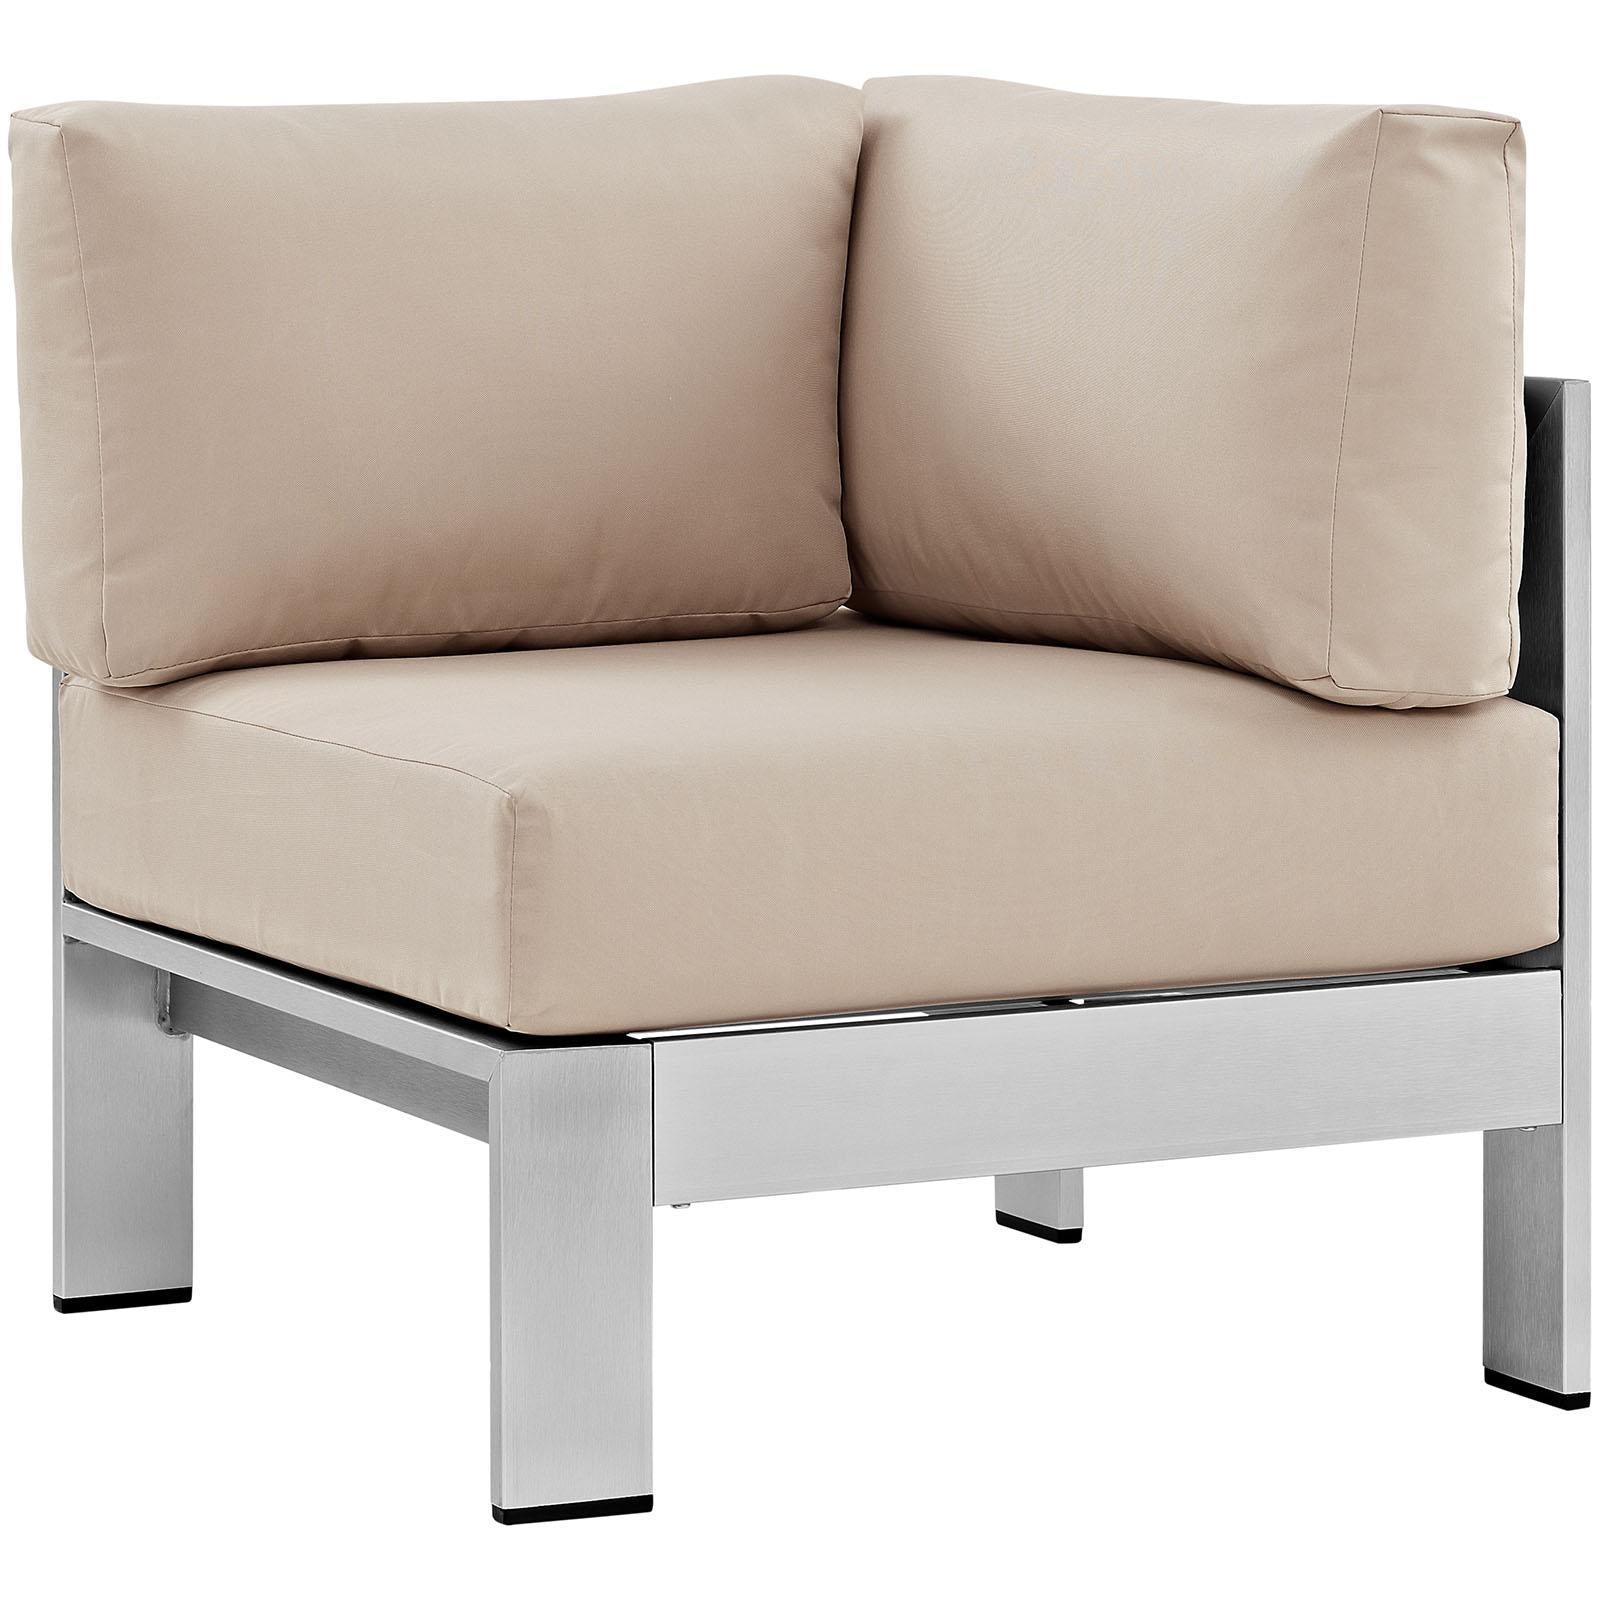 Modway Furniture Modern Shore Outdoor Patio Aluminum Corner Sofa - EEI-2264